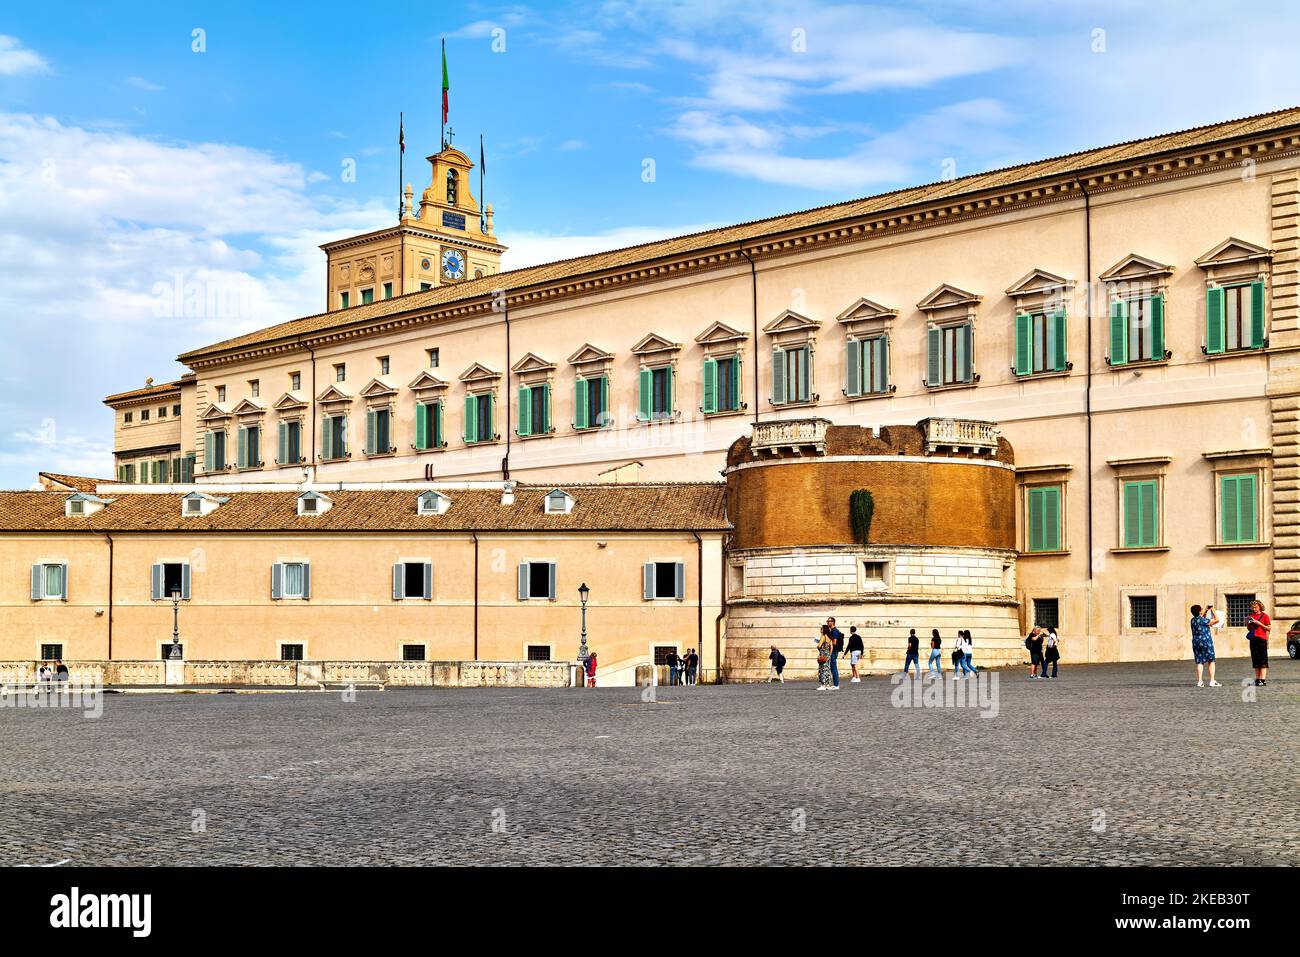 Roma Lazio Italia. El Palacio Quirinal es un edificio histórico, una de las tres residencias oficiales actuales del presidente de la República Italiana Foto de stock